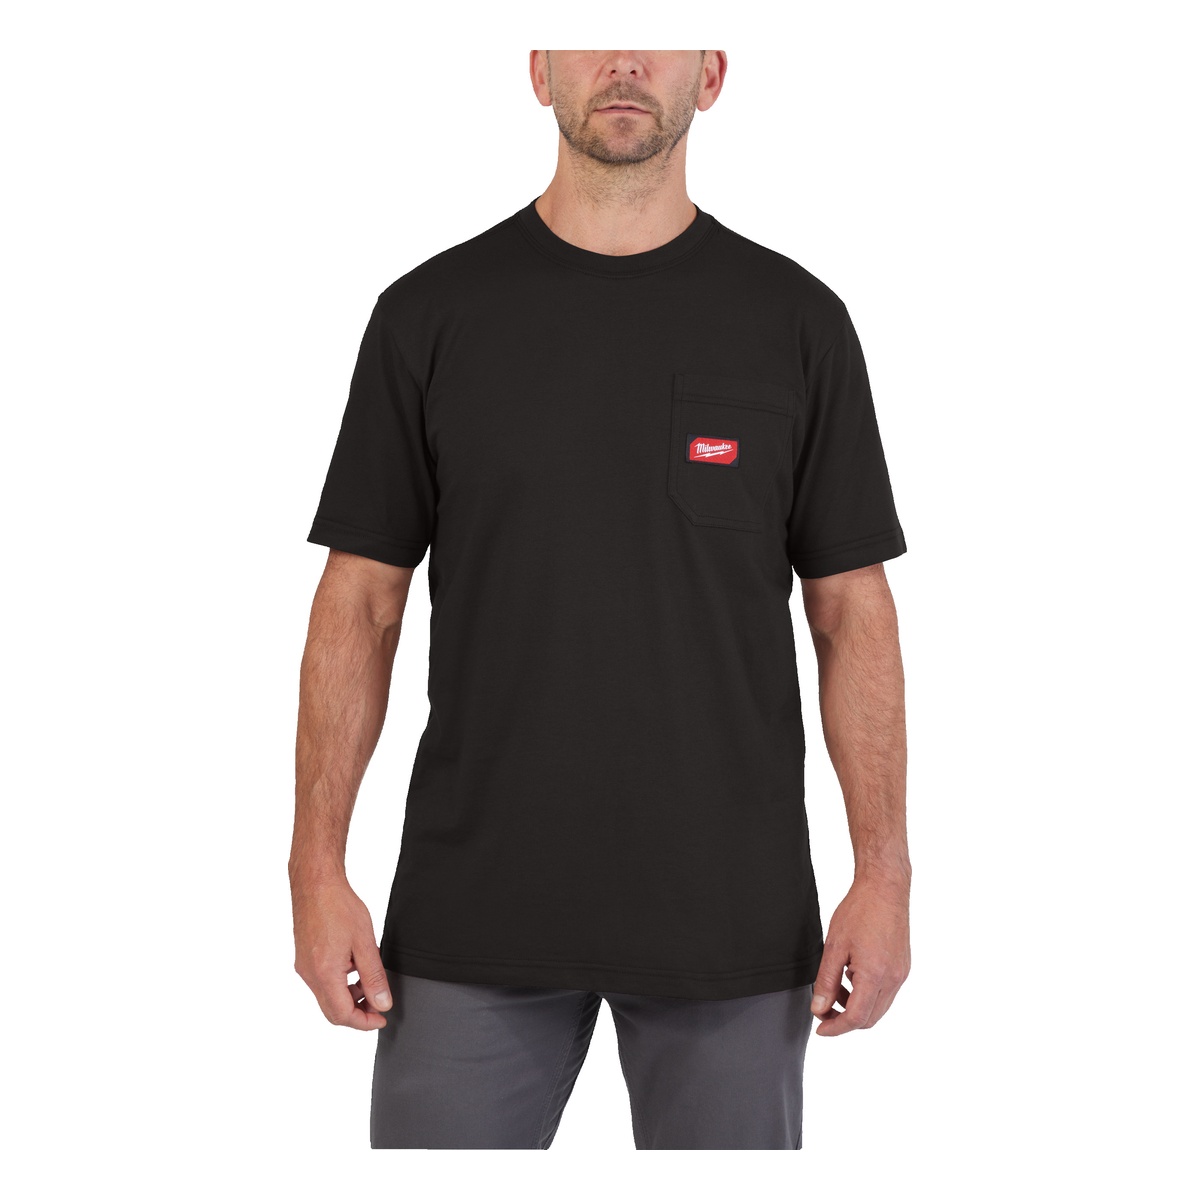 Milwaukee Arbeits-T-Shirt schwarz mit UV-Schutz WTSSBL-XL - 1 Stk.